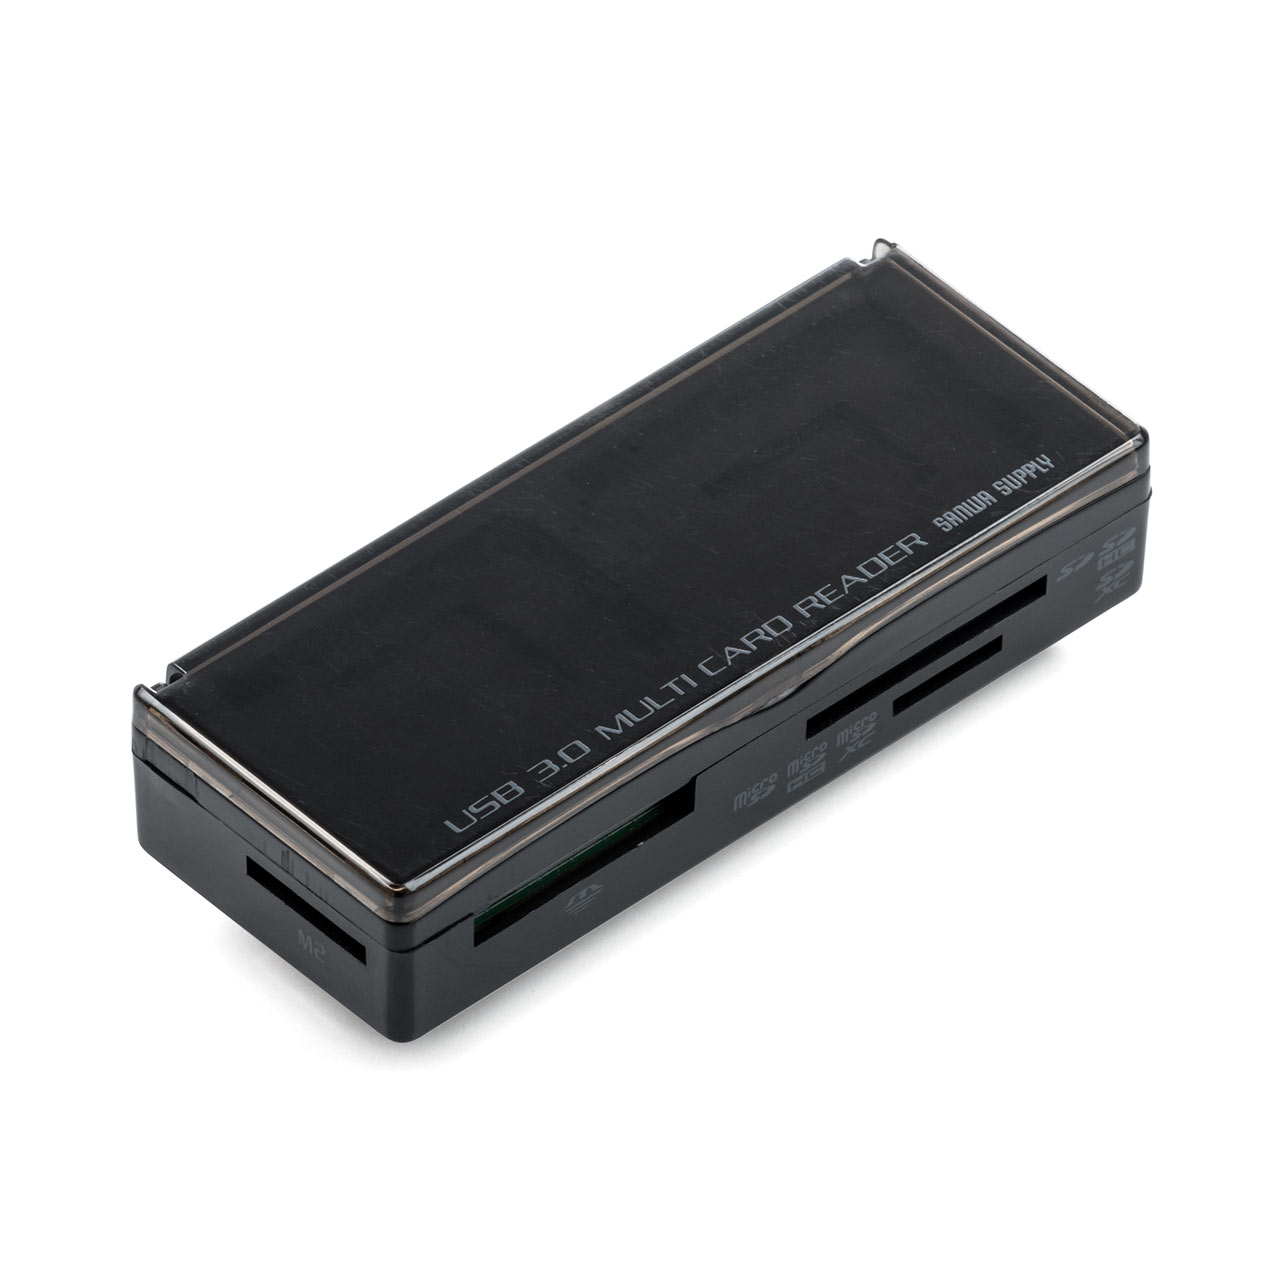 メモリーカードケース付きカードリーダー（SD・microSD・メモリースティック・M2・メモリケース・USB3.1 Gen1 Aコネクタ） 400-ADR316BK